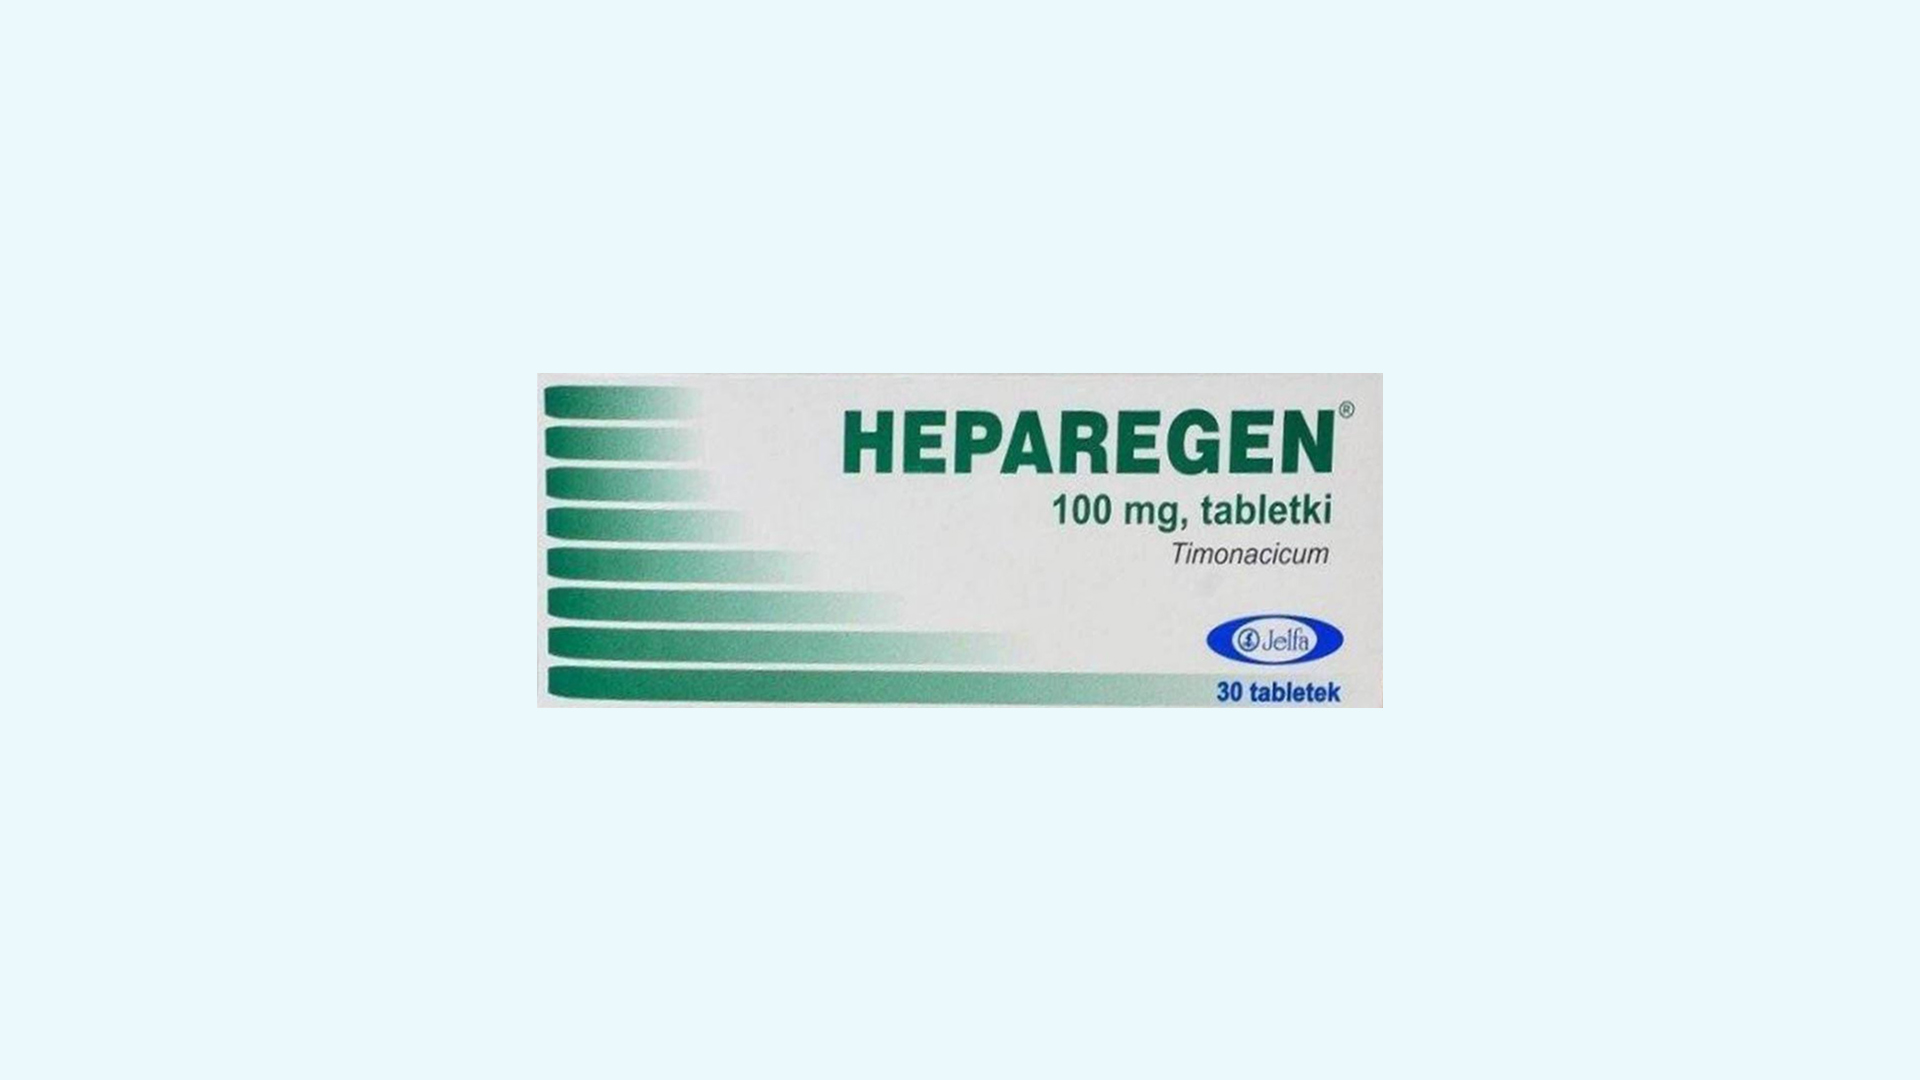 Heparegen – informacje o leku, cena, dawkowanie oraz przeciwwskazania